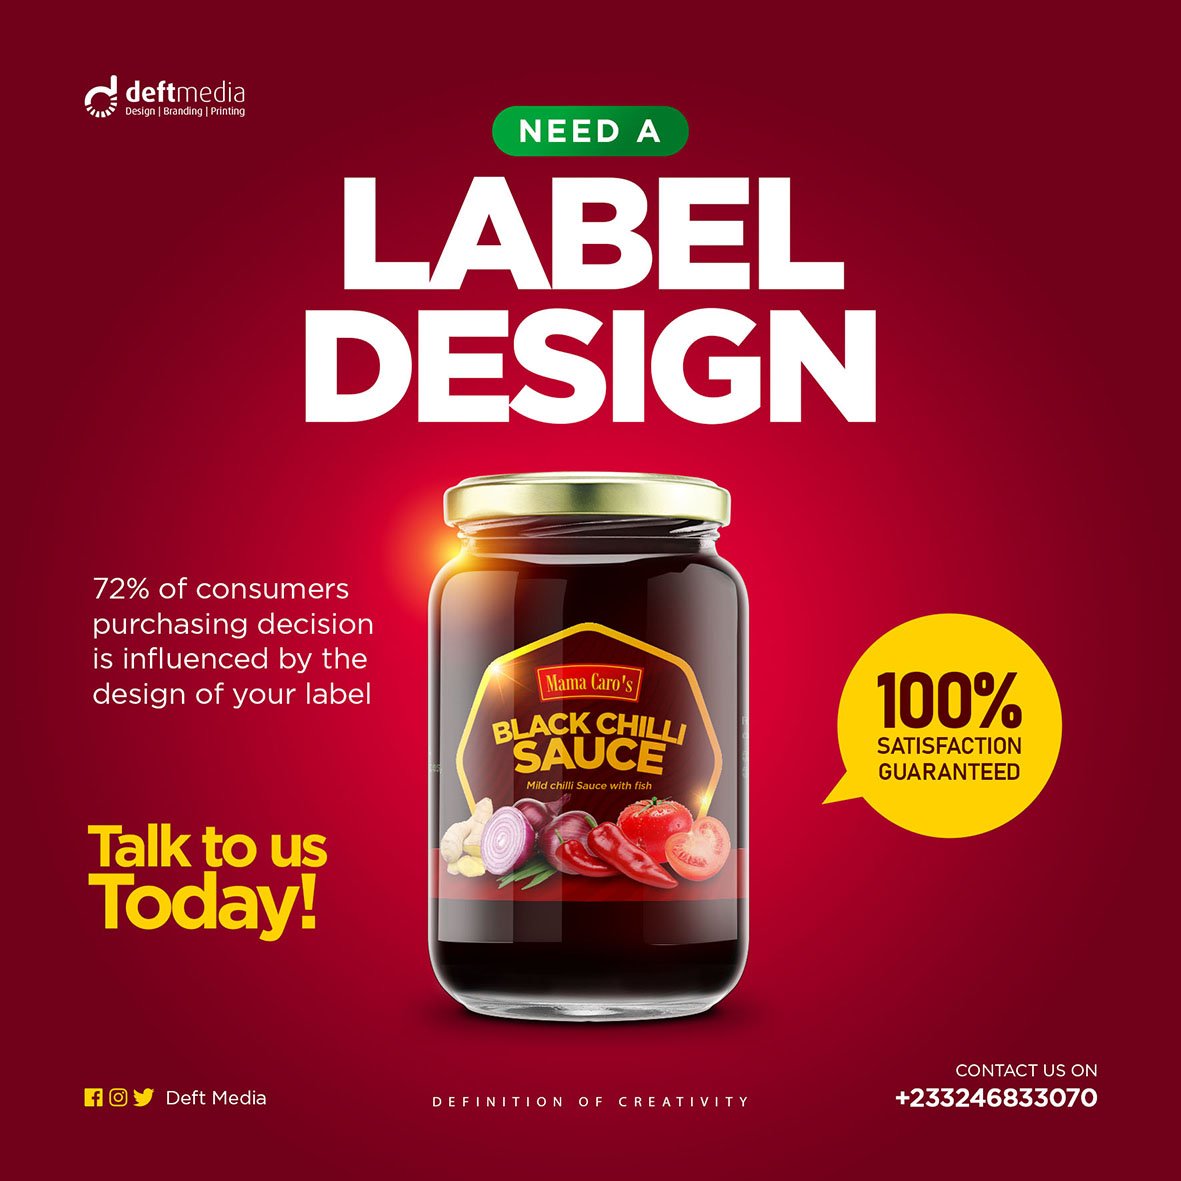 Sauce / Shito label 🏷 design